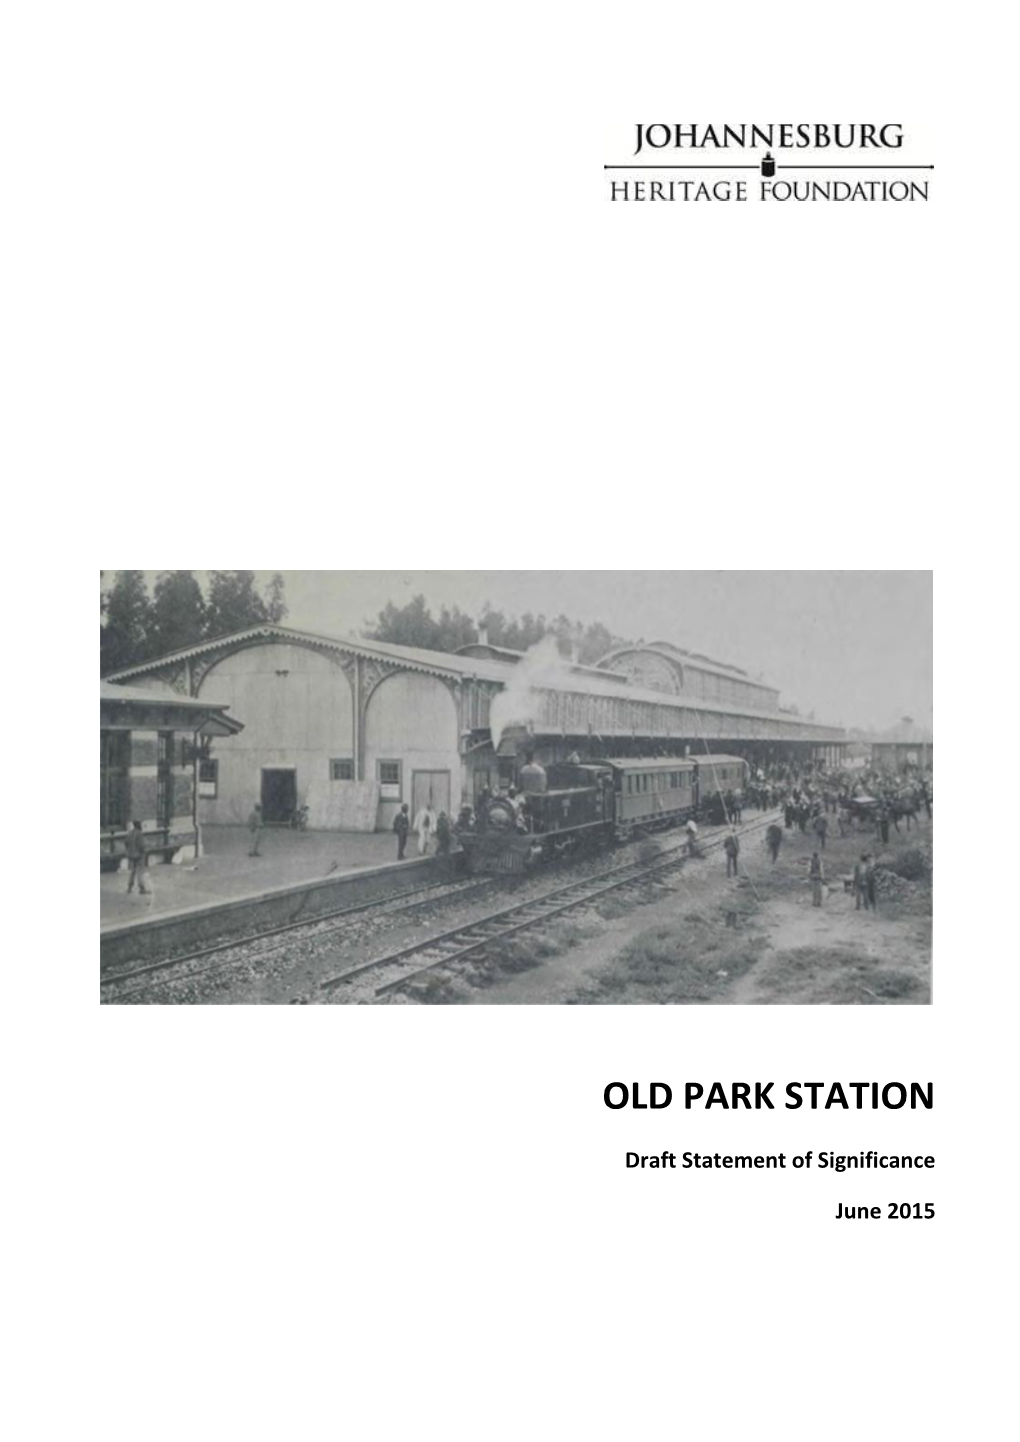 Old Park Station